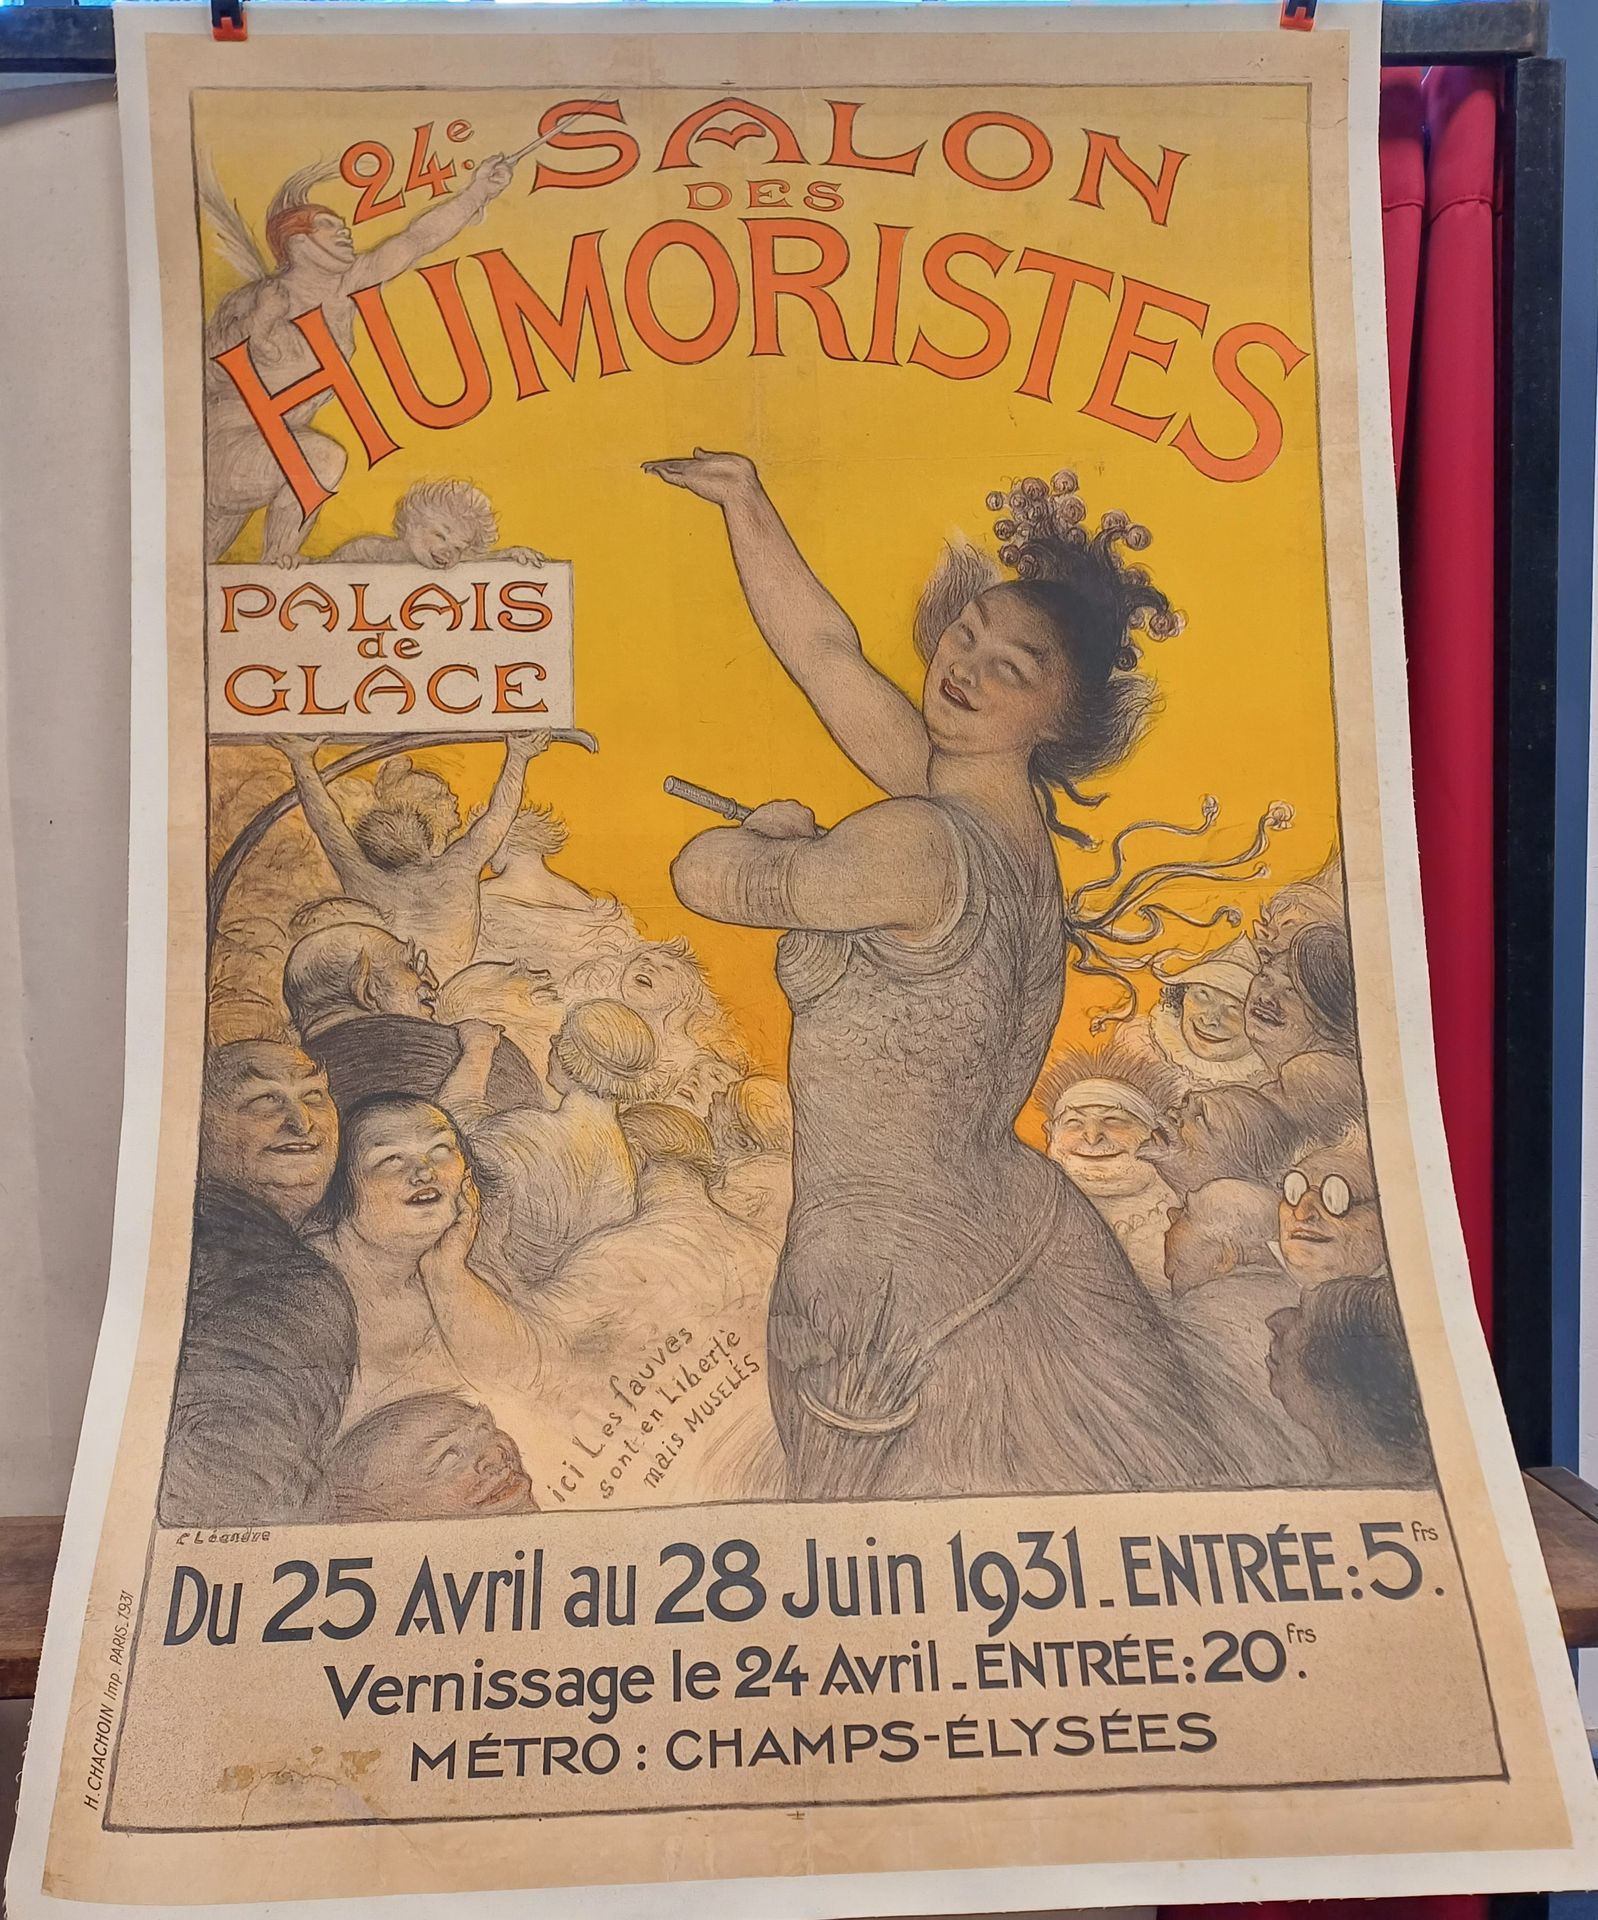 Charles Léandre Charles Léandre ( 1862-1934)
Affiche entoilée
24 ème salon des h&hellip;